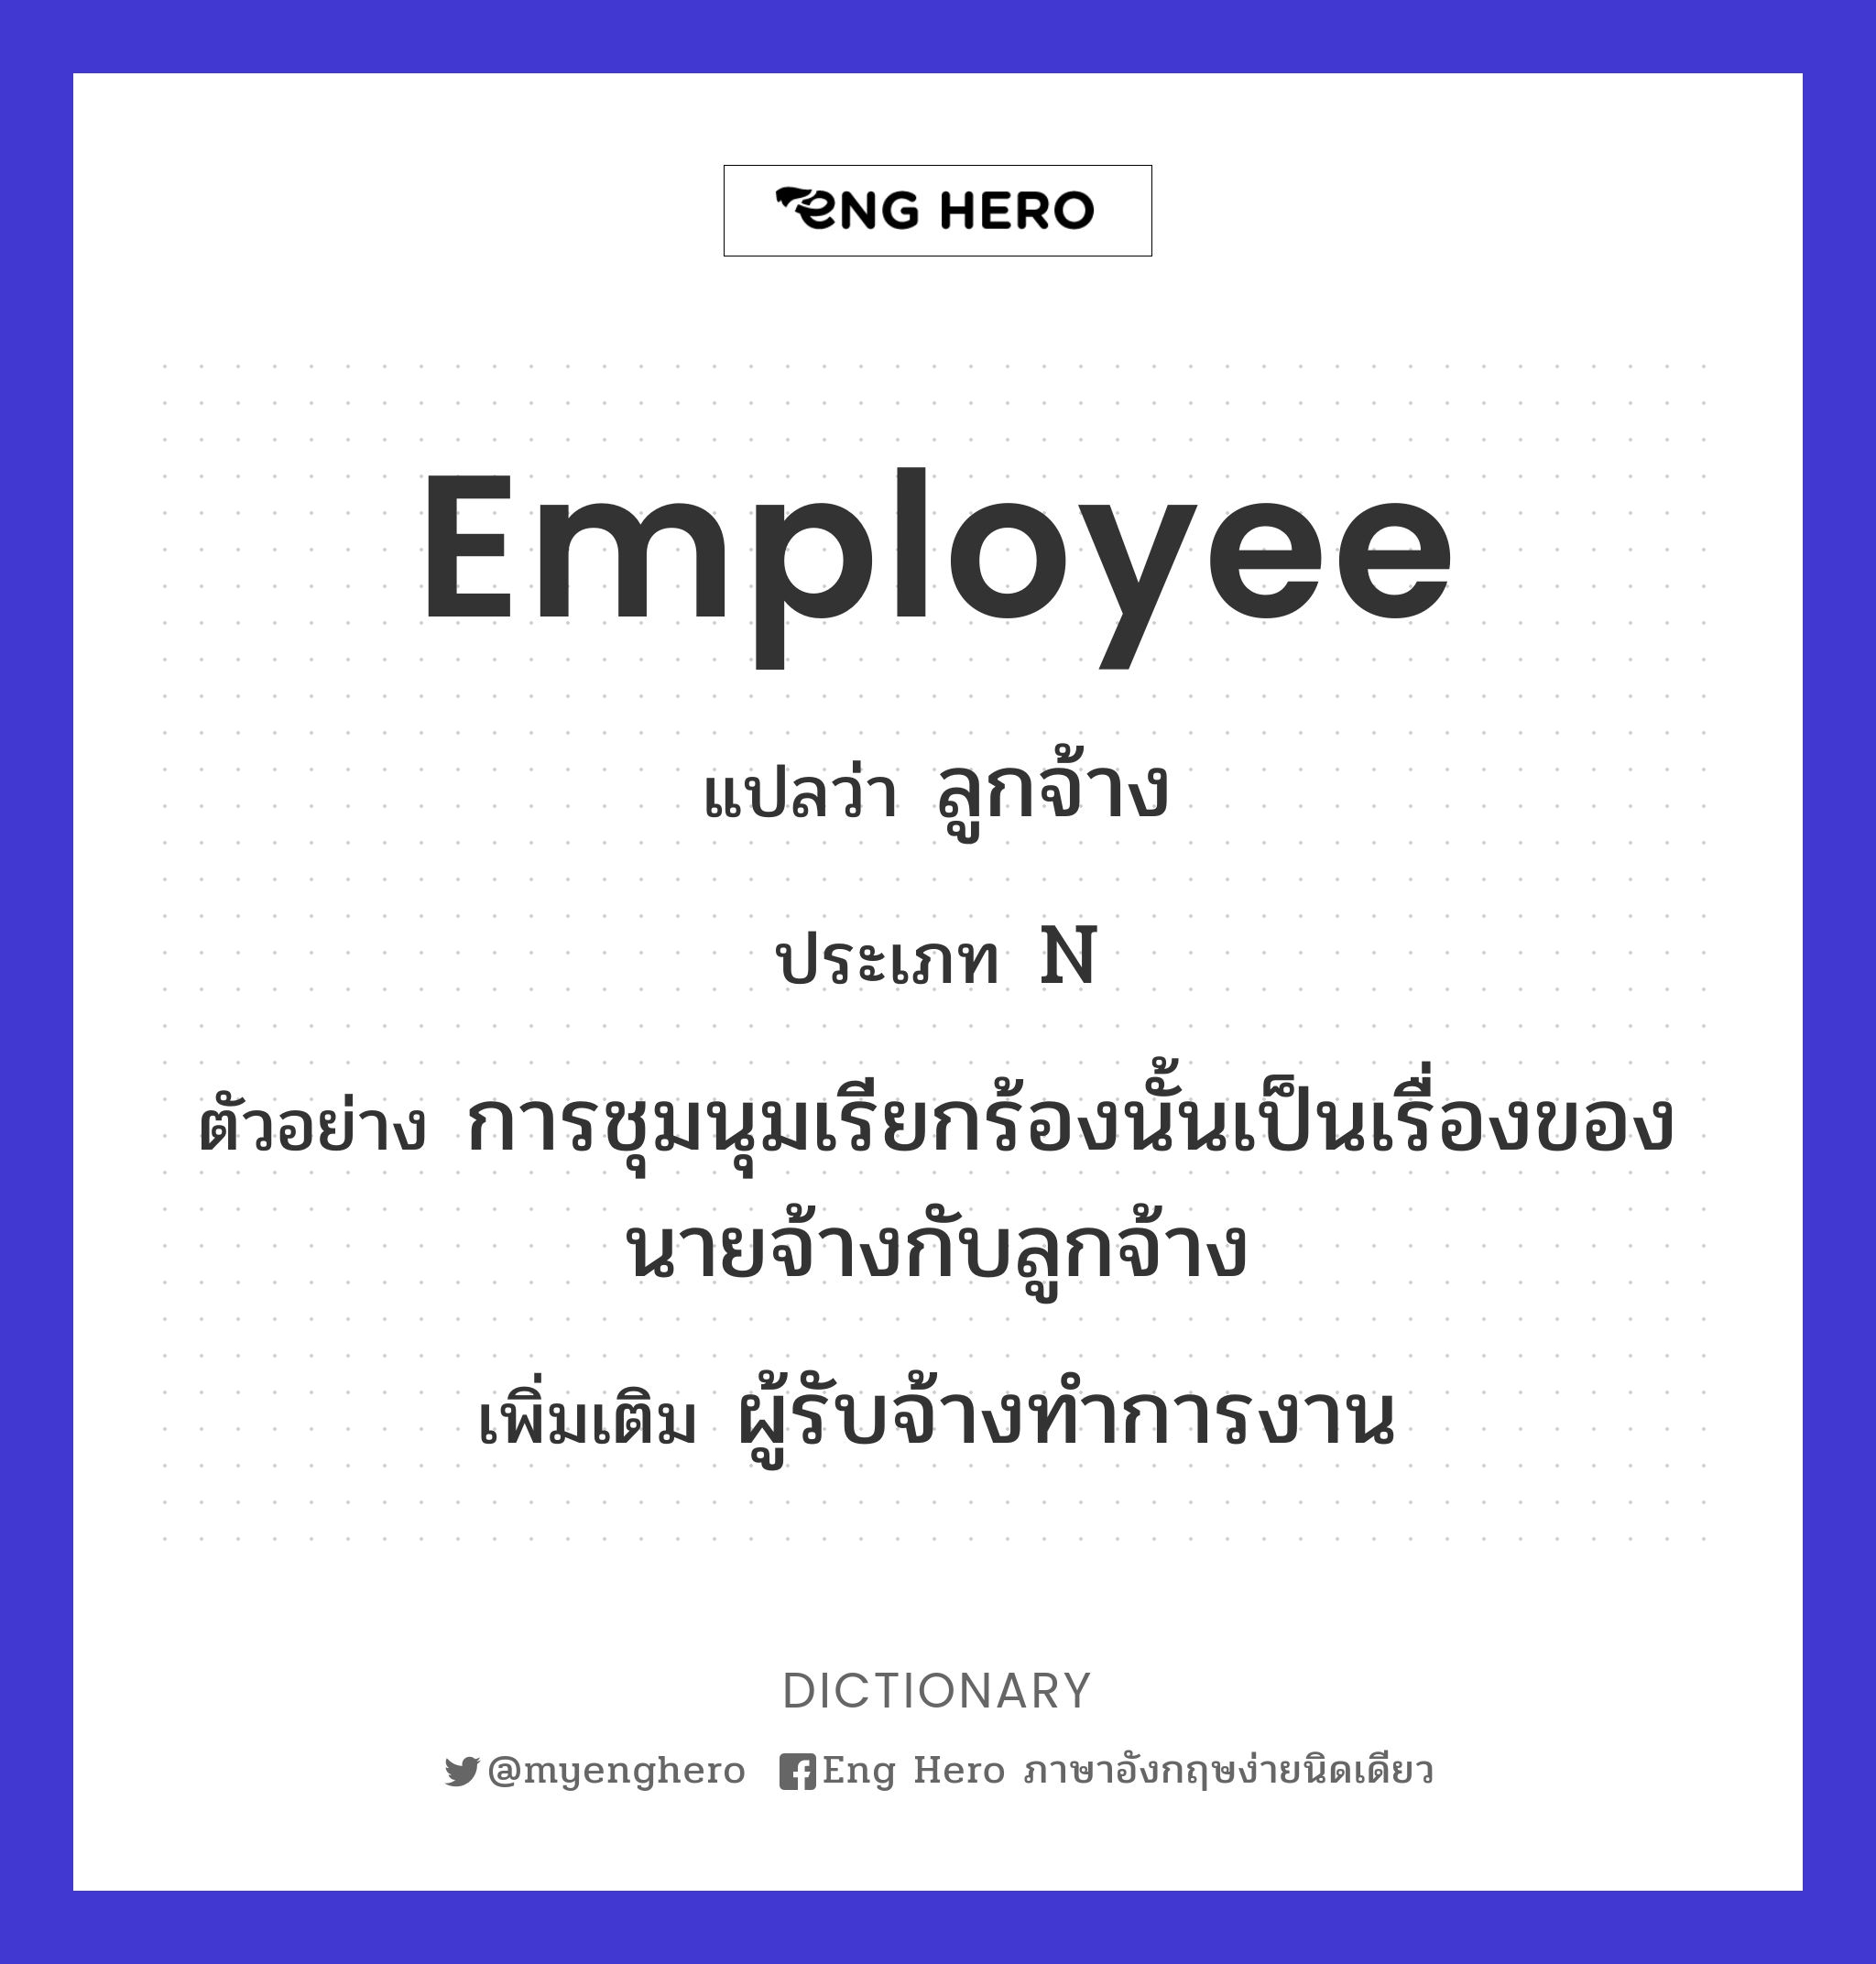 employee